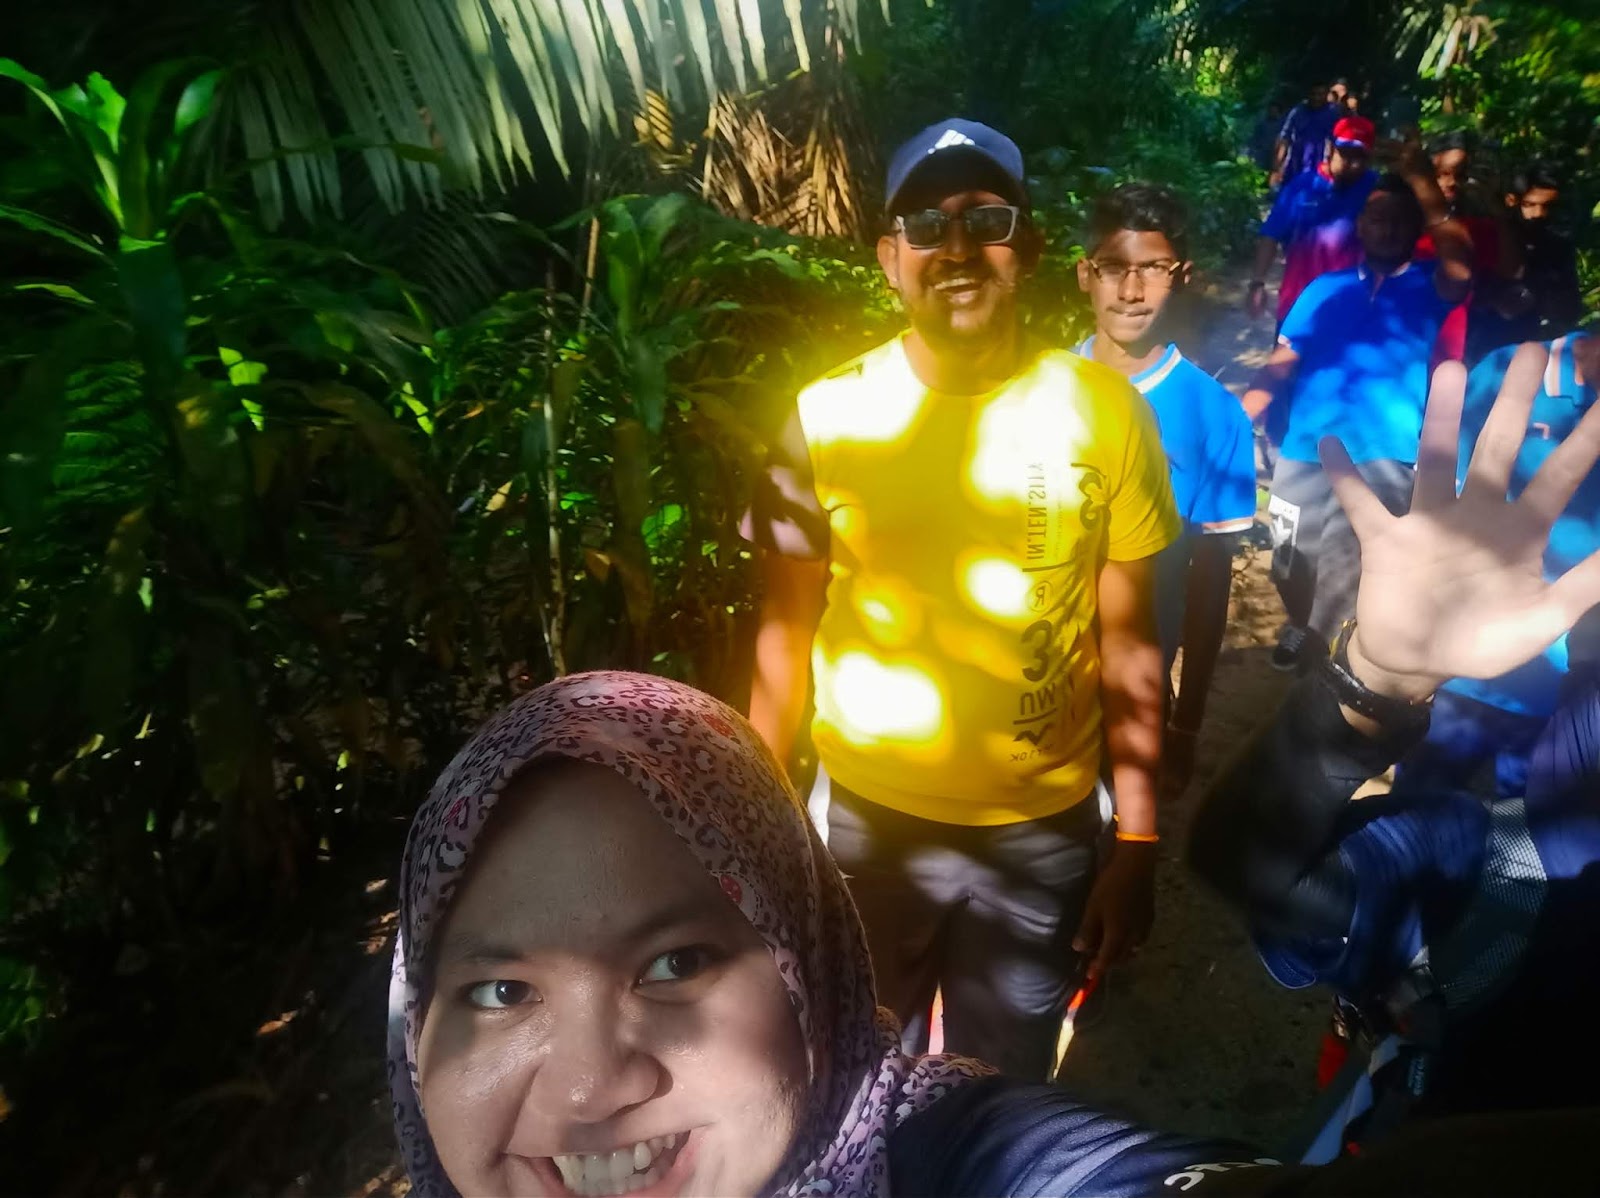 Hiking Hutan Pendidikan Bukit Gasing, Cara ke Hutan Pendidikan Bukit Gasing